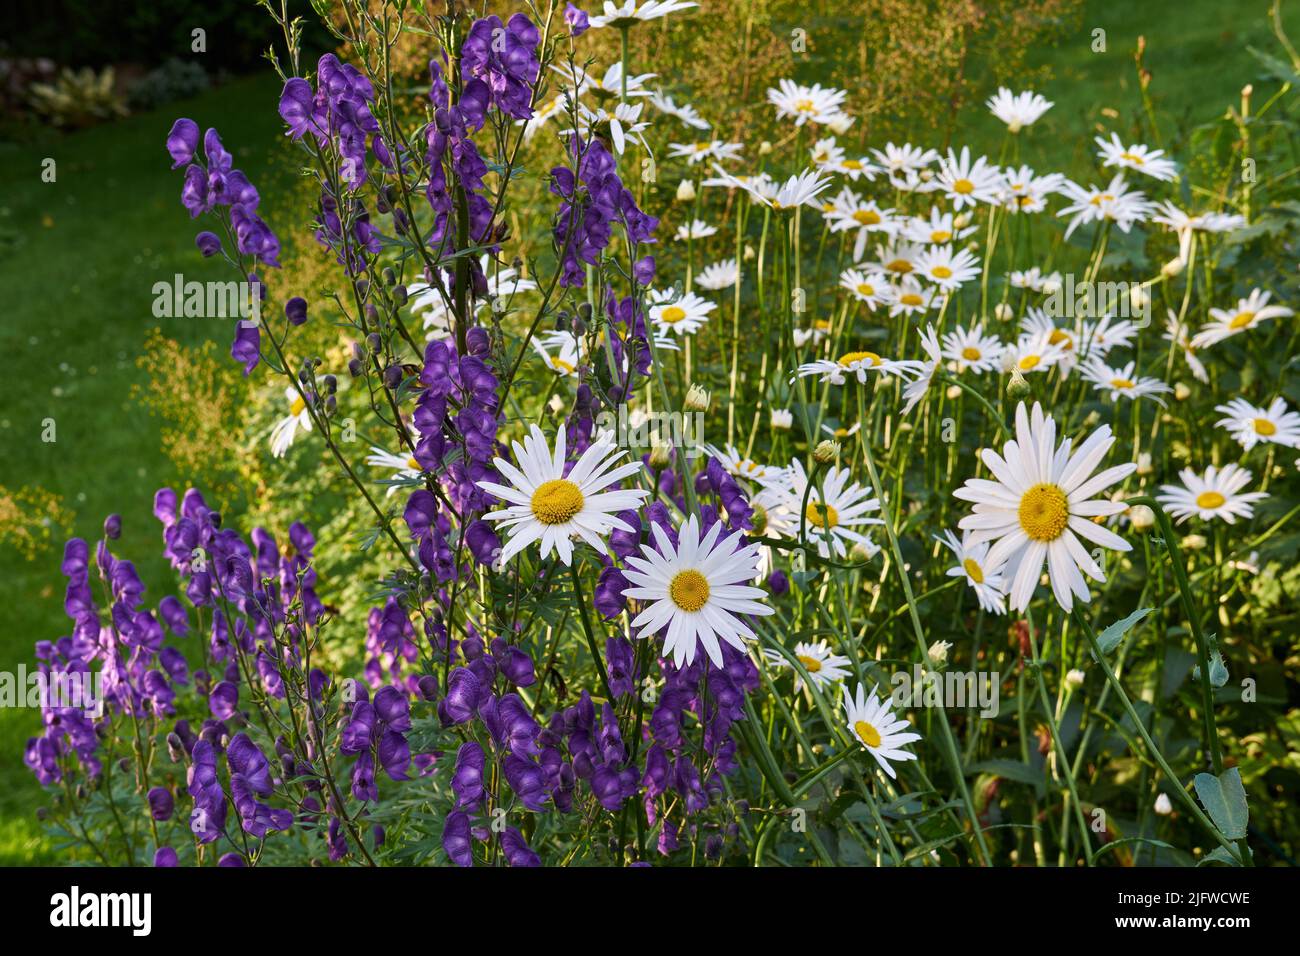 Ein Blick auf eine blühende lange gewöhnliche Gänseblümchen-Blume mit Aster. Blumen und weiße, violette Blütenblätter mit Dampf und gelbem Zentrum in Blüte und spätem Frühling Stockfoto